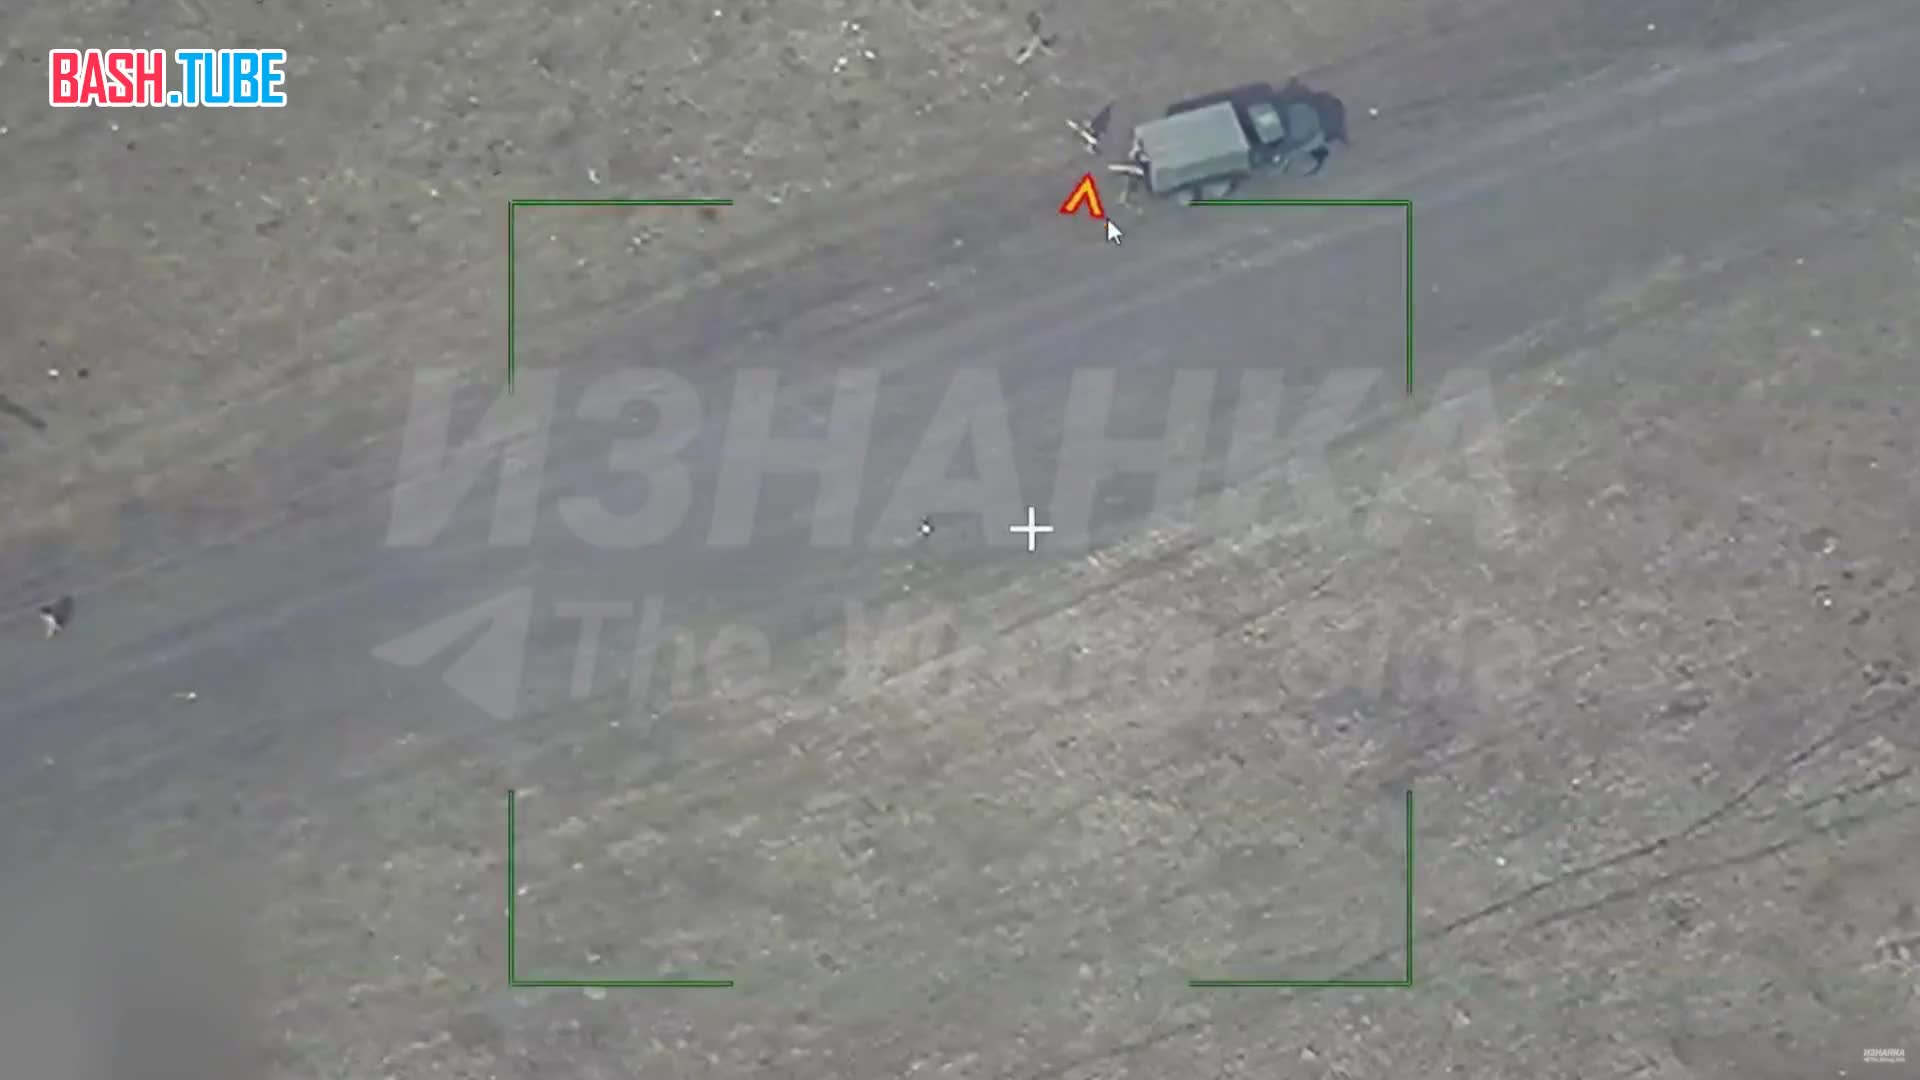  Продолжение видео с уничтожением вертолётов ВСУ около села Новопавловка